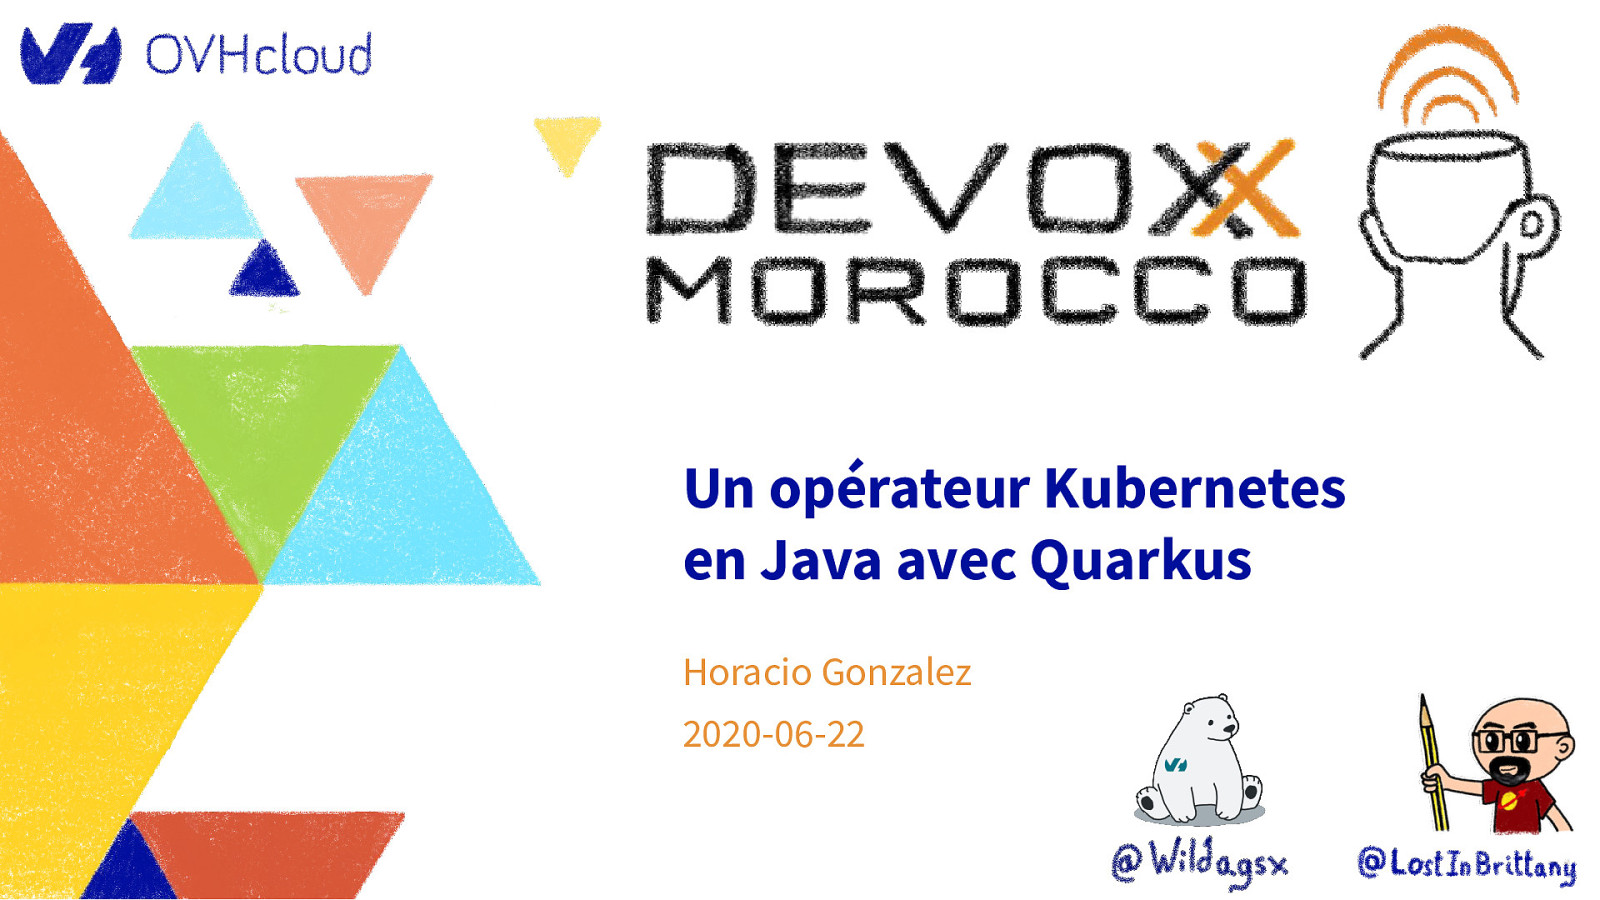 Toi aussi apprends à développer un opérateur Kubernetes en Java avec Quarkus